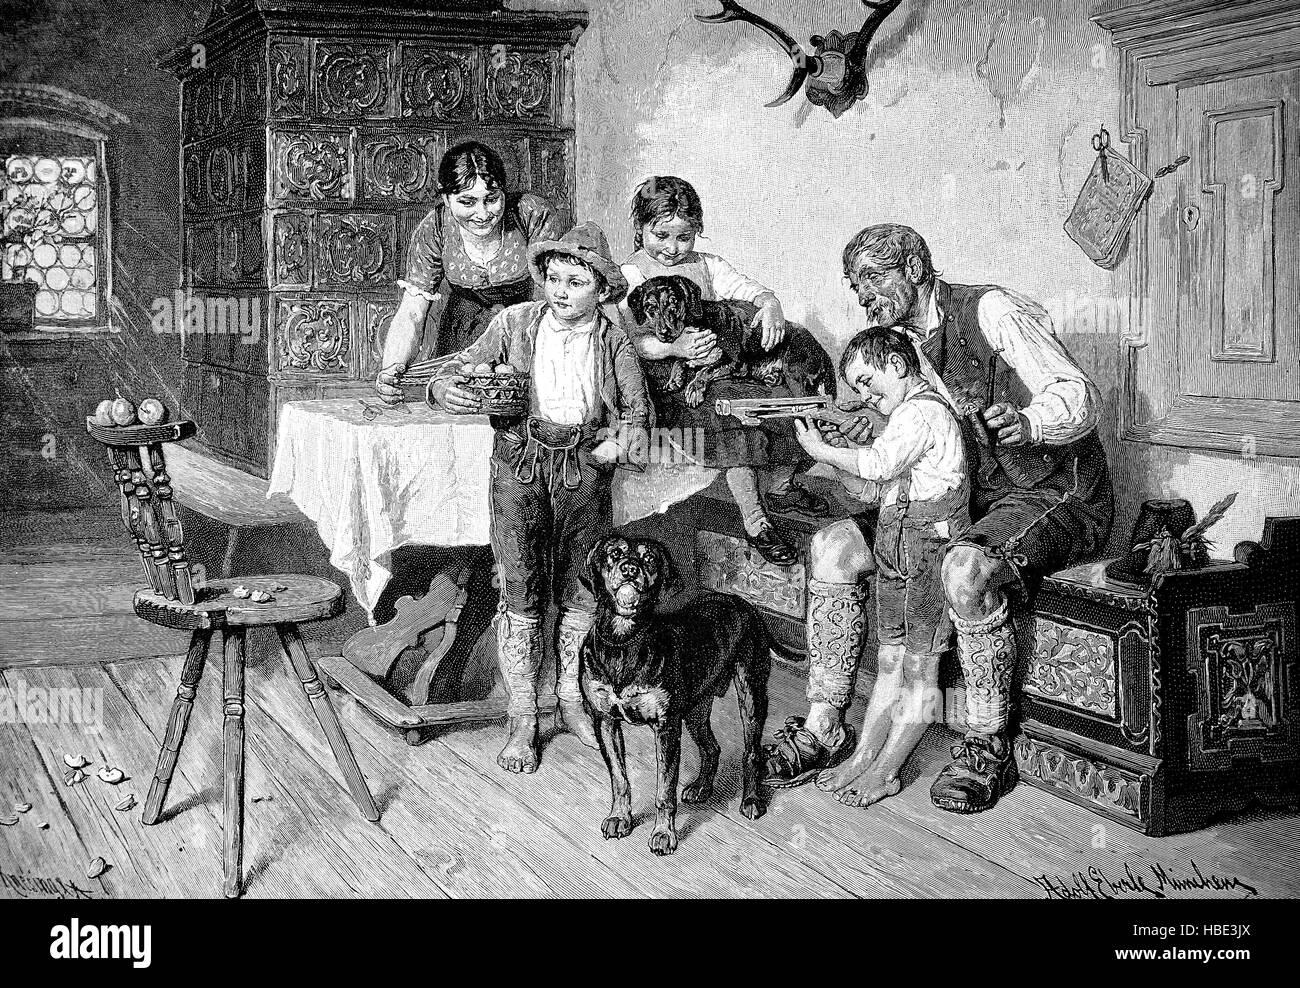 Famiglia idyl domenica pomeriggio nel salotto di un imprenditore bavarese, bambino praticare con un piccolo crossbow, Germania, illustrazione, xilografia dal 1880 Foto Stock